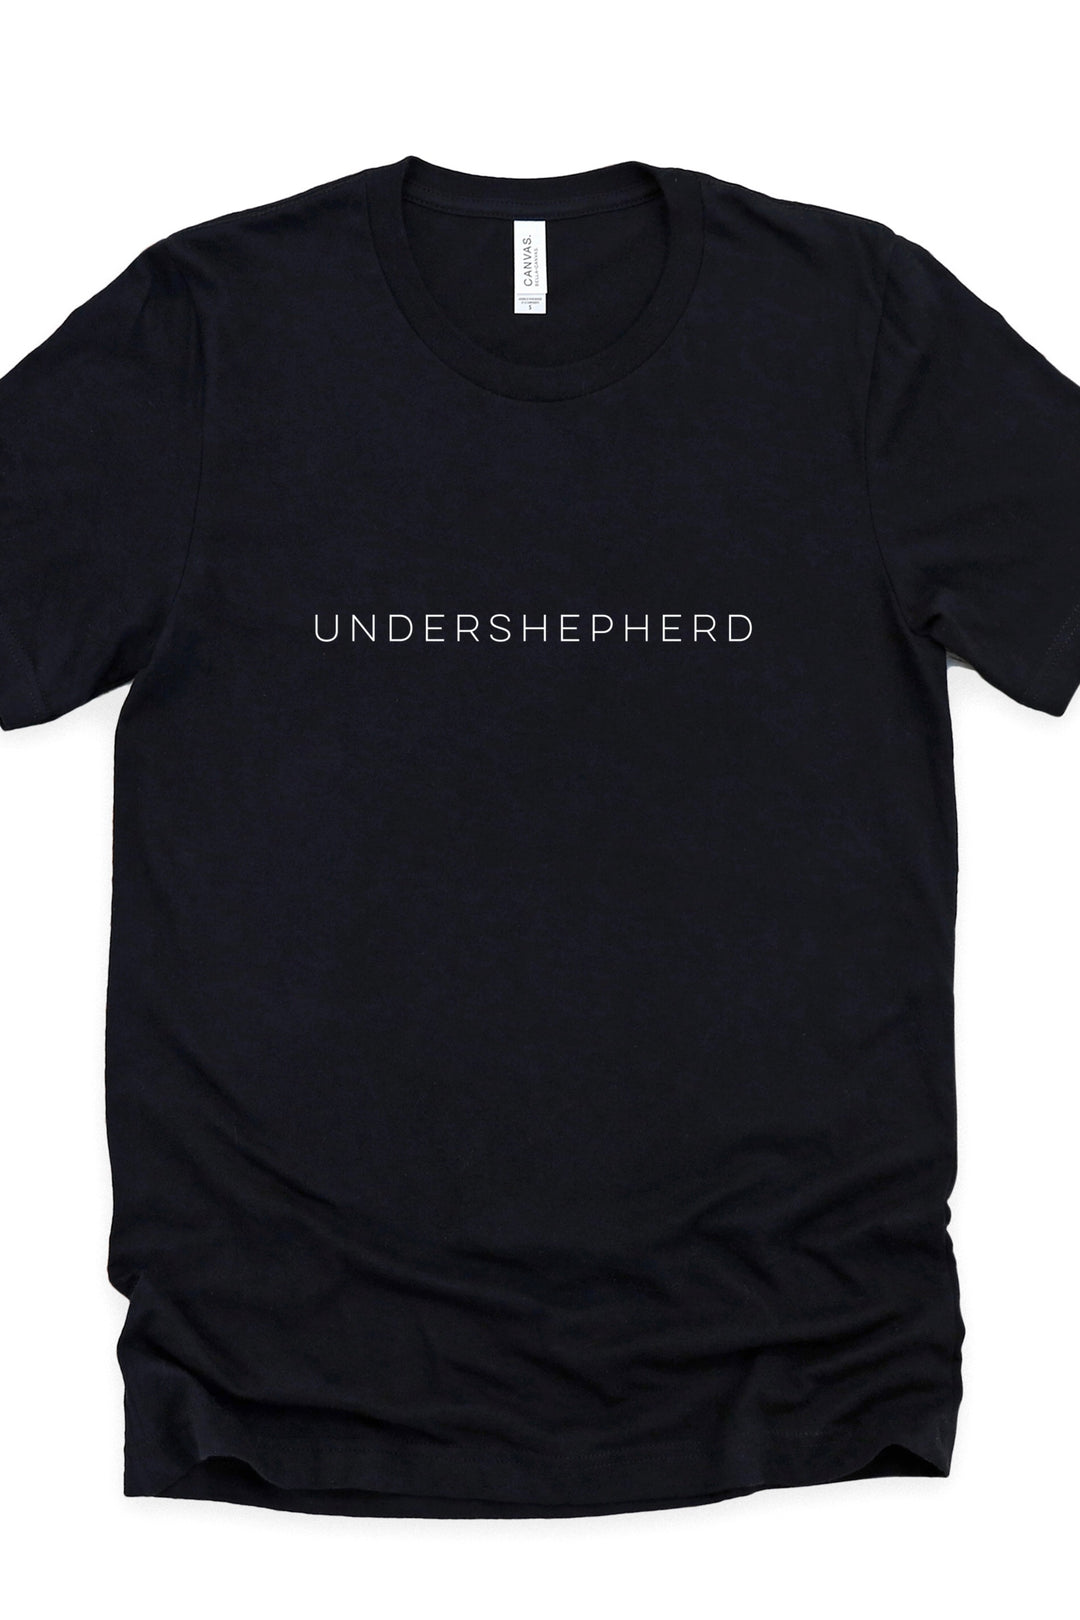 "Undershepherd" Pastor/Elder Tee